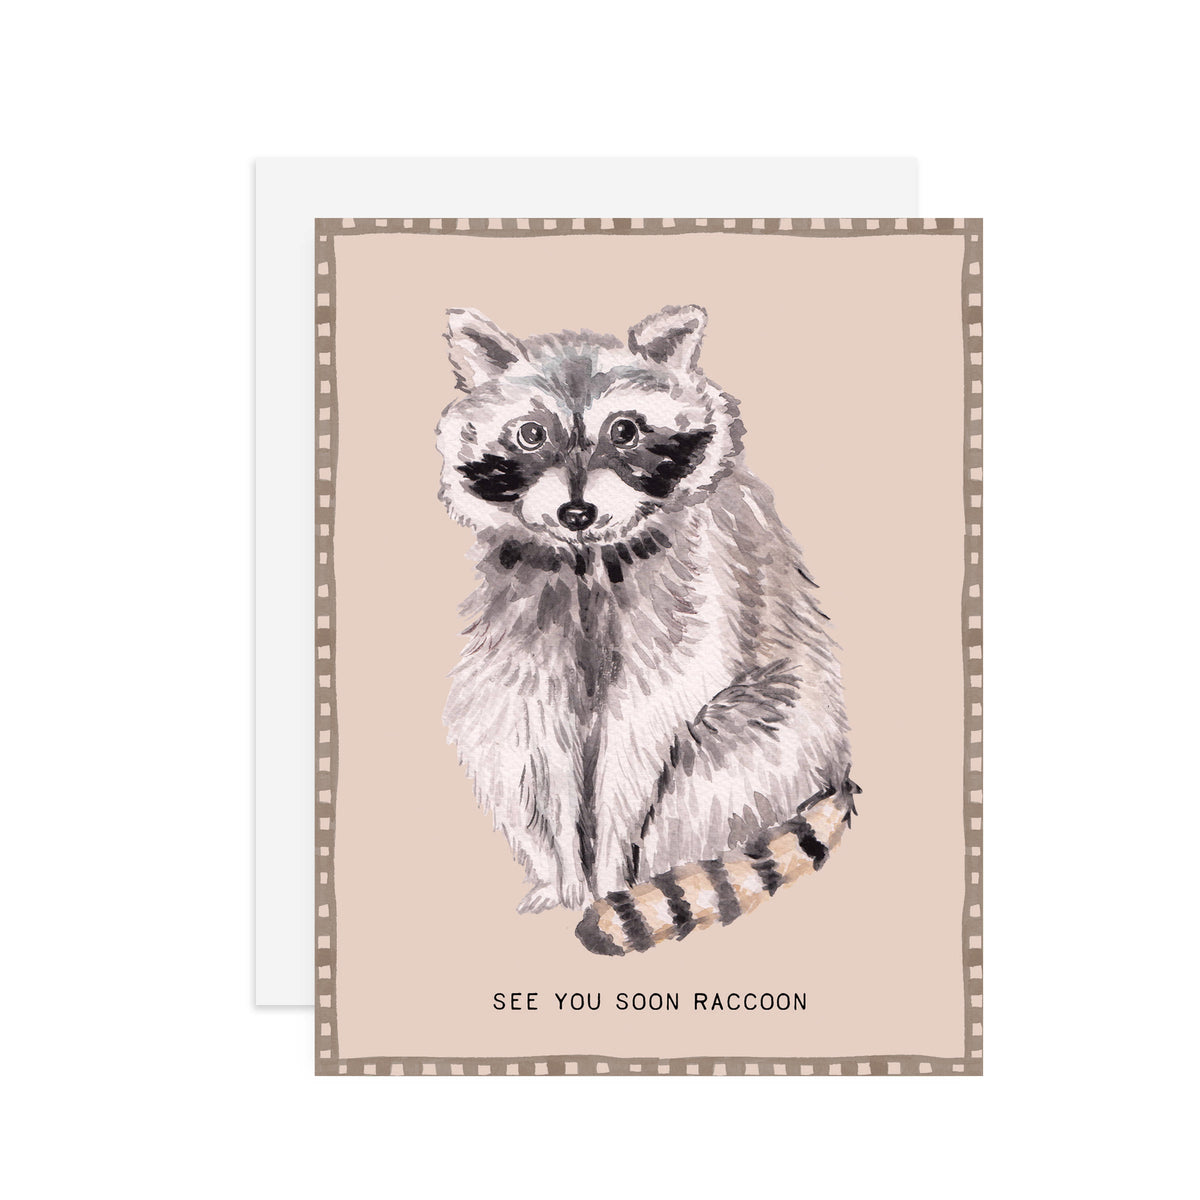 Soon Raccoon - A2 notecard